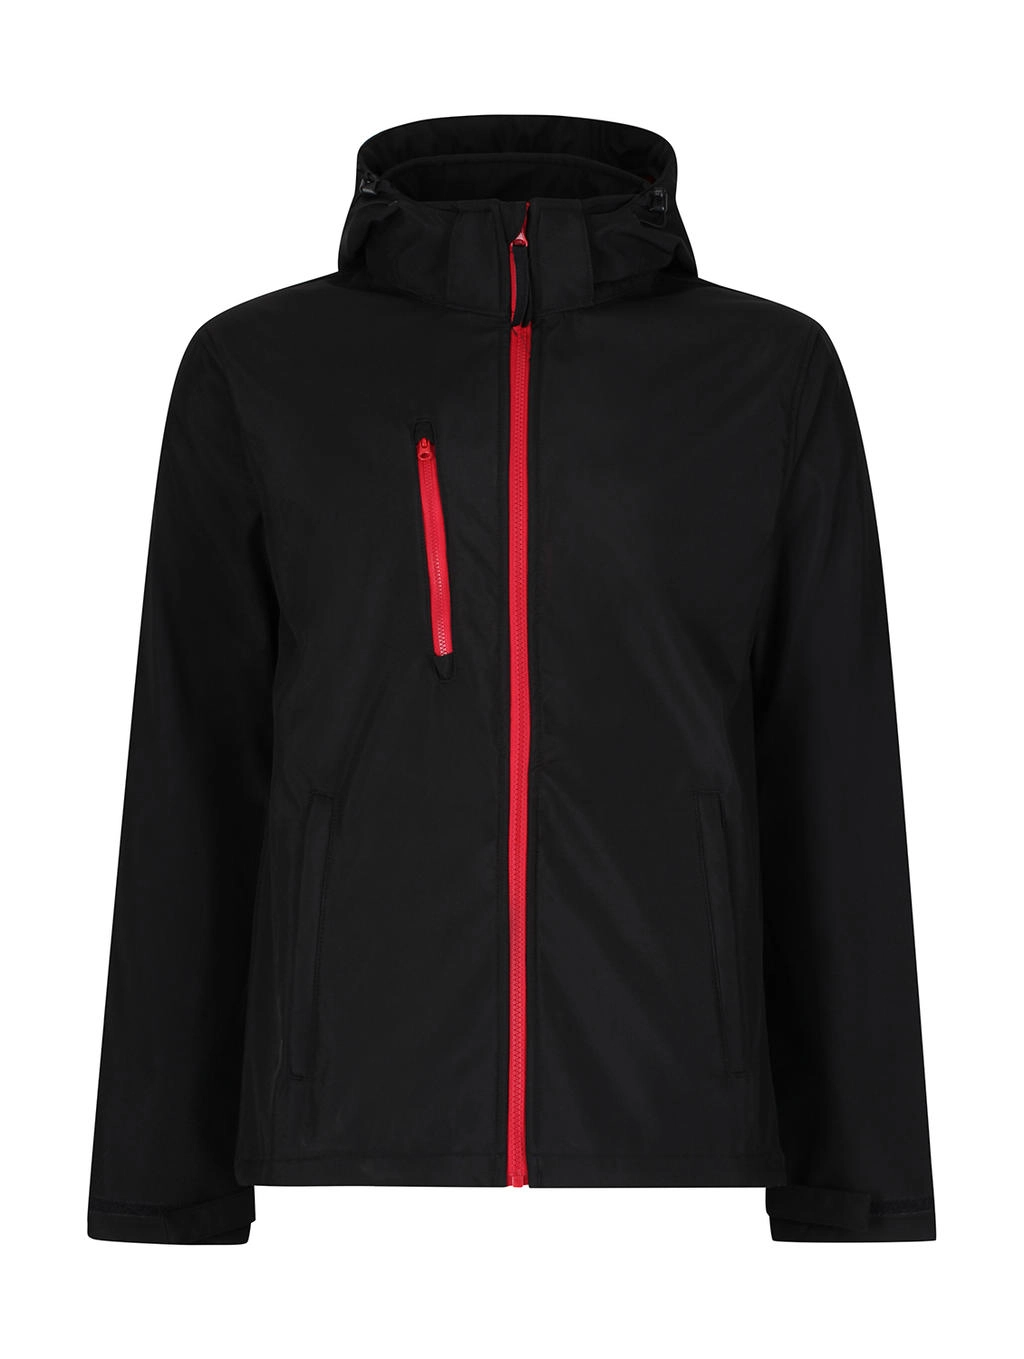 Venturer 3-Layer Hooded Softshell Jacket zum Besticken und Bedrucken in der Farbe Black/Red mit Ihren Logo, Schriftzug oder Motiv.